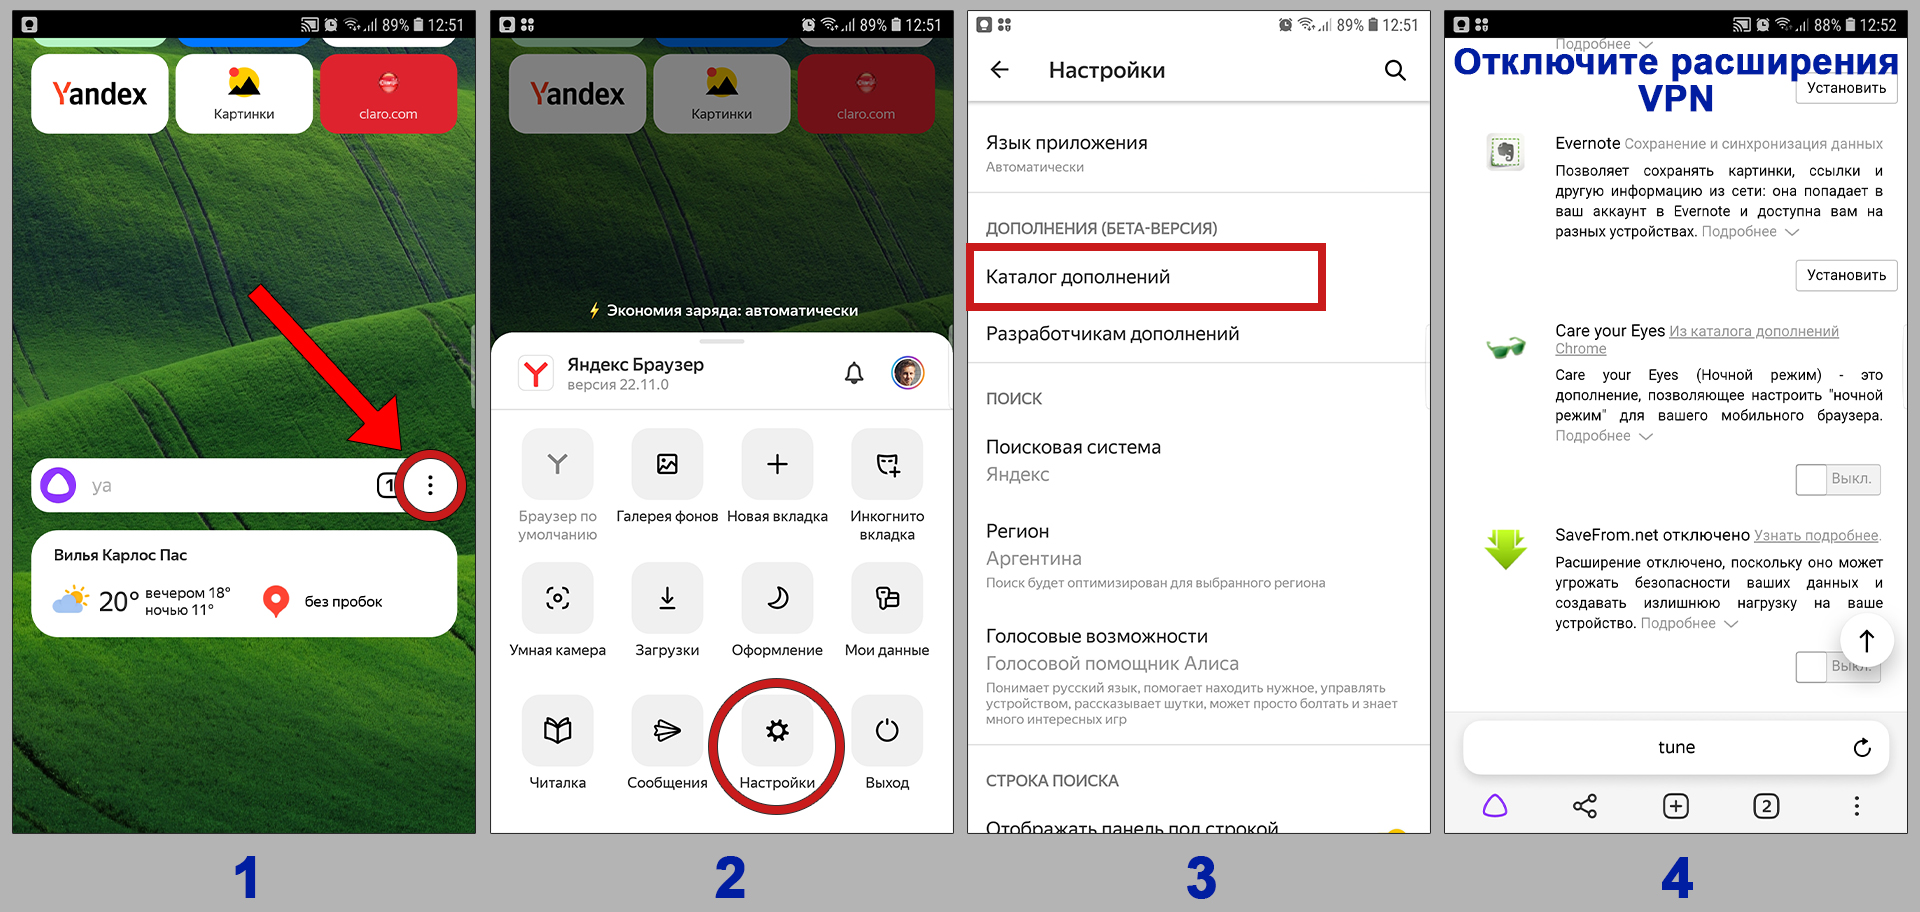 4 этапа отключения VPN в настройках мобильного Яндекс браузера на телефоне.